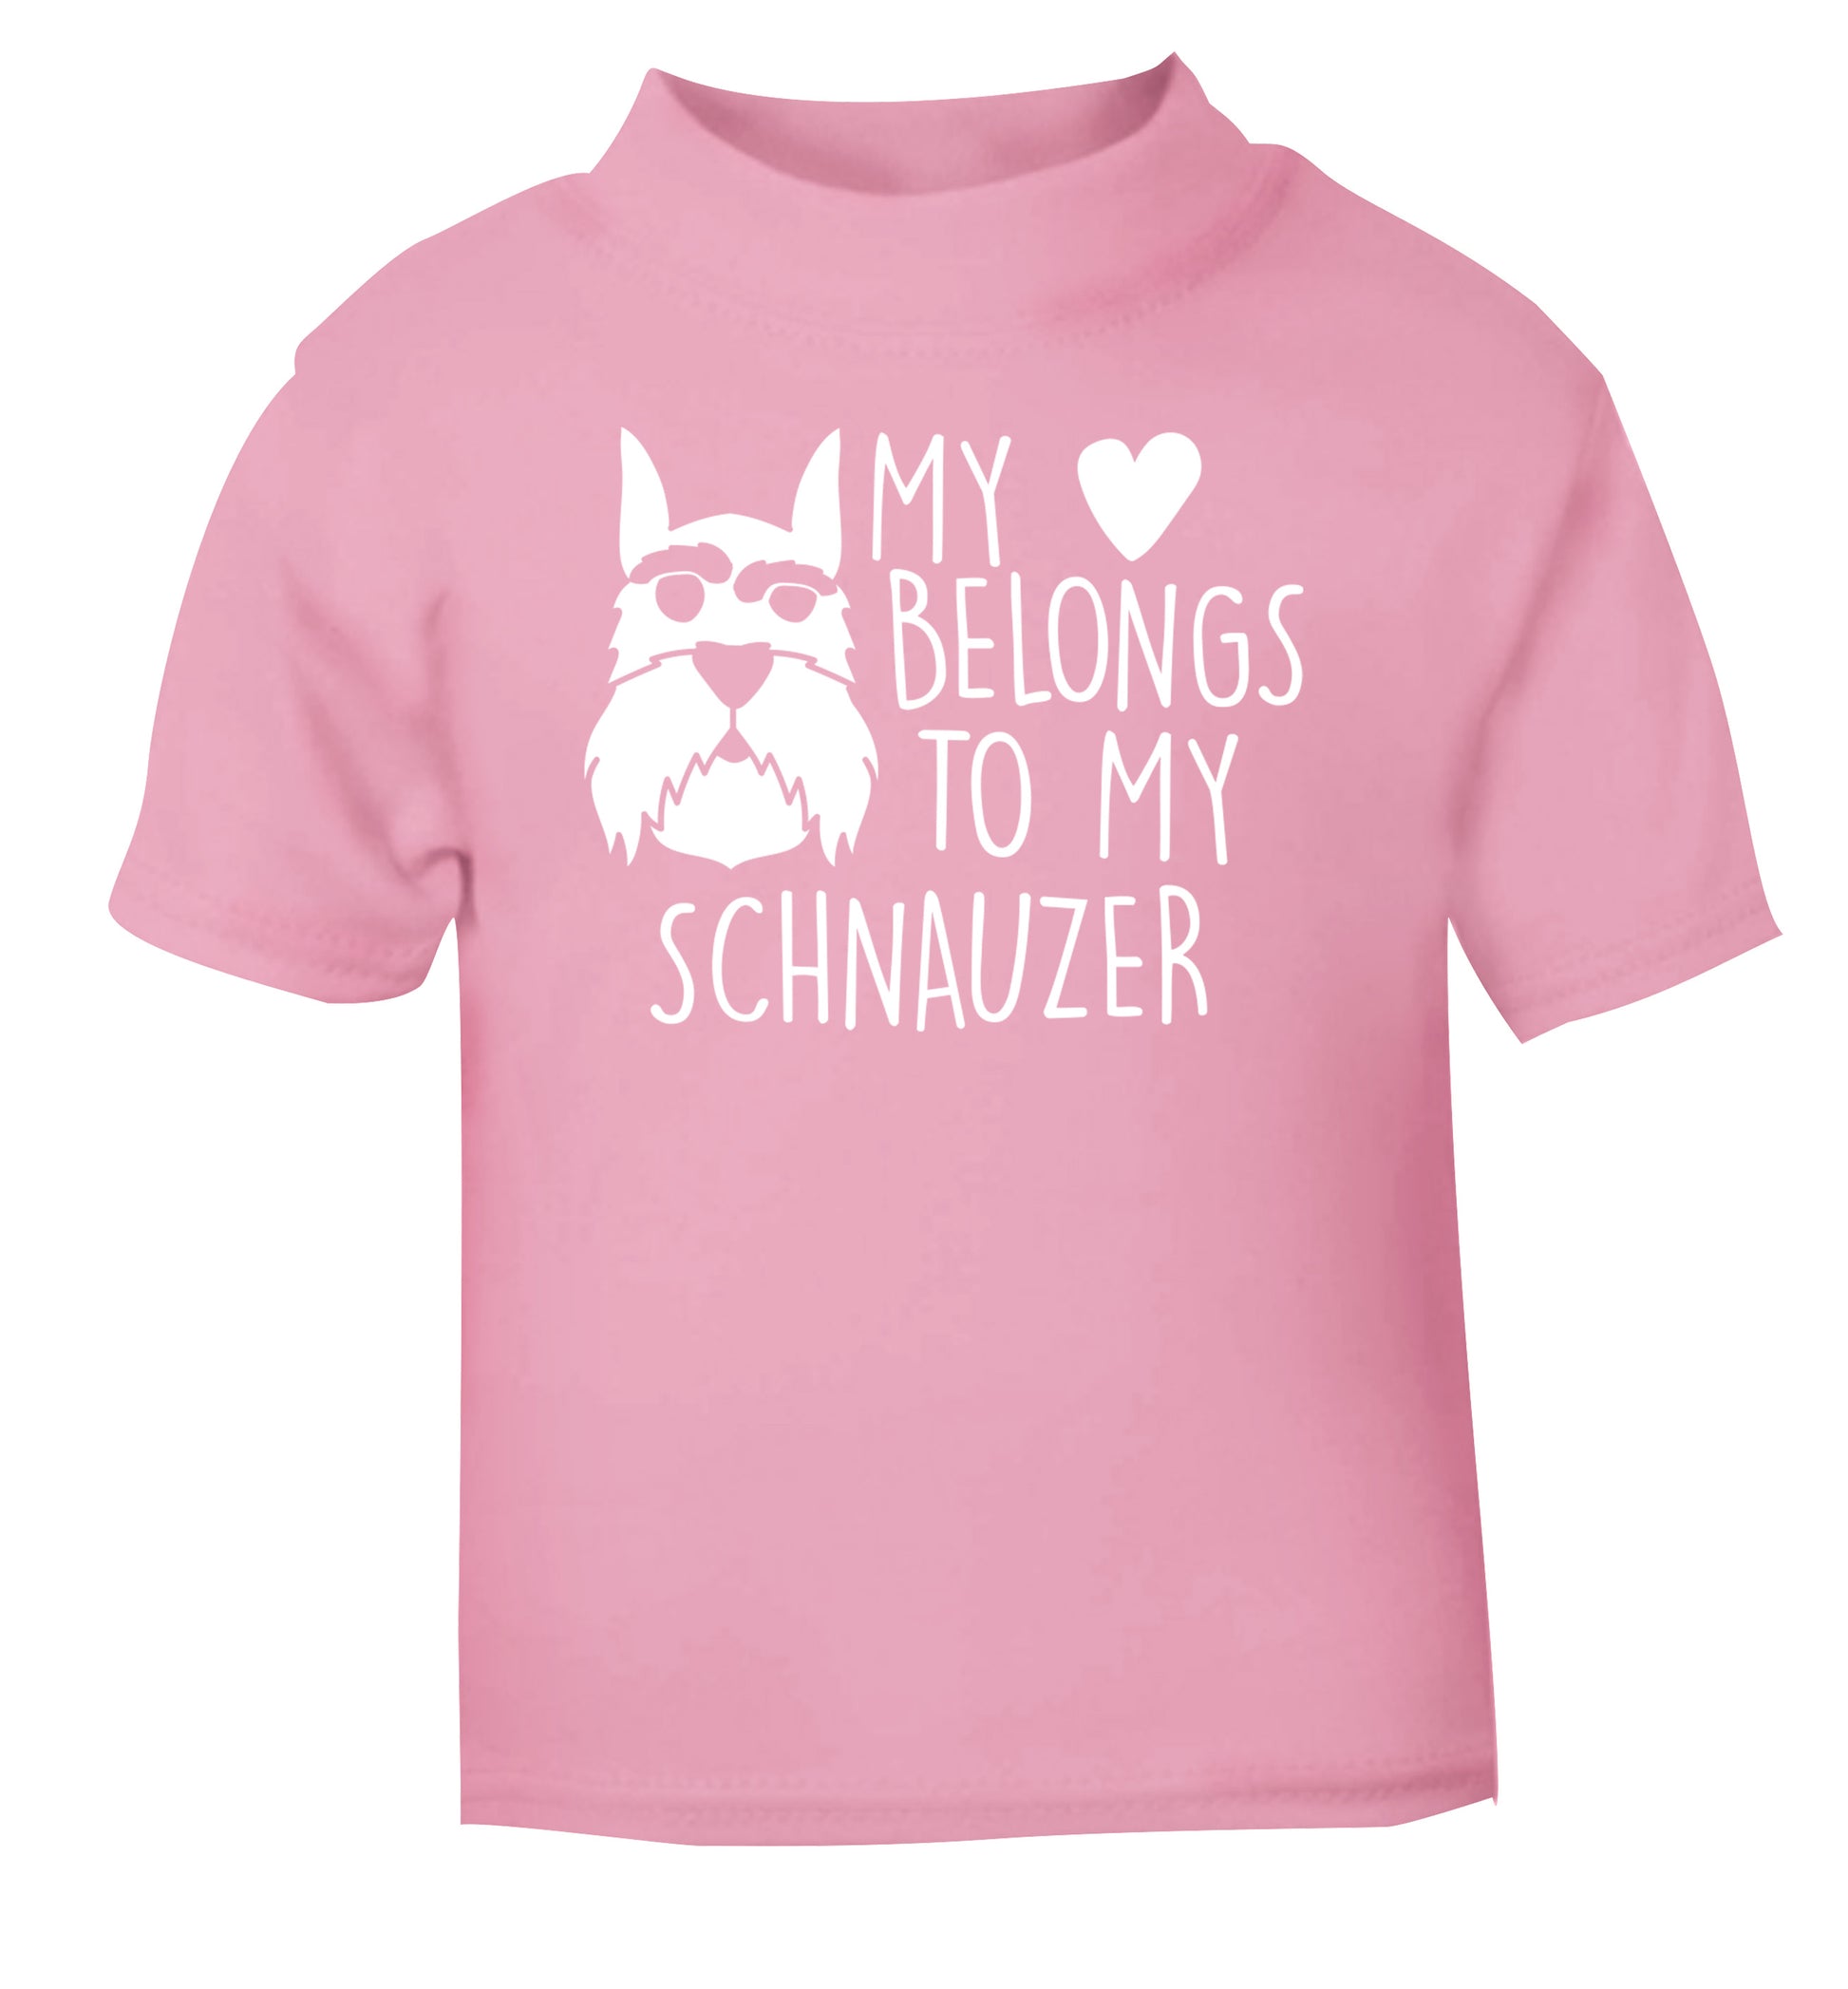 My heart belongs to my schnauzer light pink Baby Toddler Tshirt 2 Years